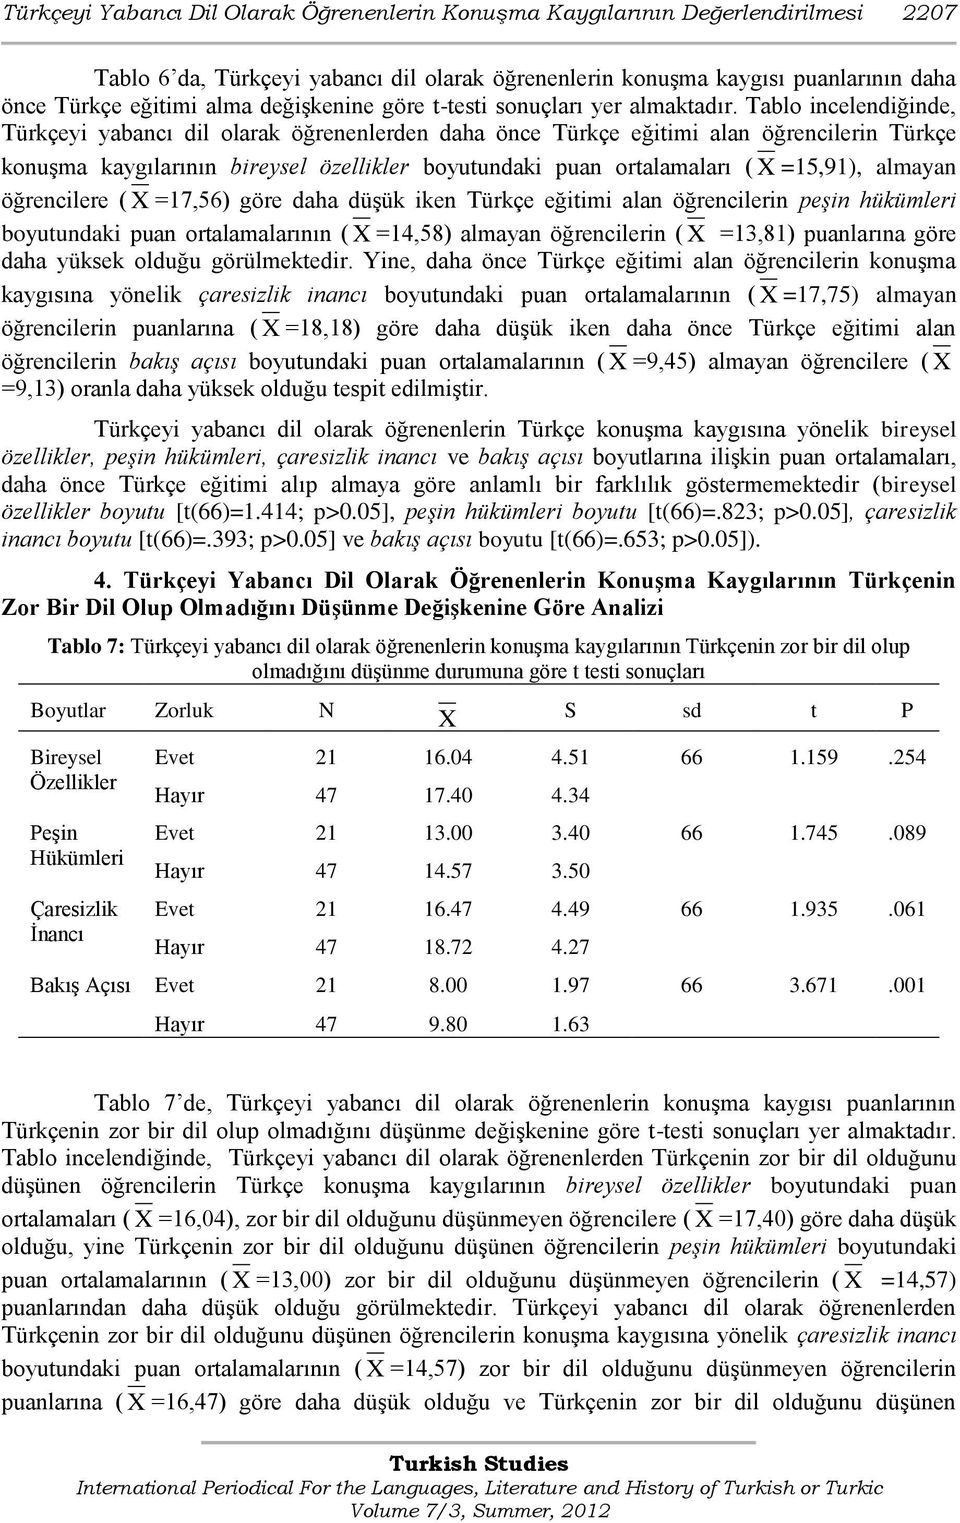 Tablo incelendiğinde, Türkçeyi yabancı dil olarak öğrenenlerden daha önce Türkçe eğitimi alan öğrencilerin Türkçe konuģma kaygılarının bireysel özellikler boyutundaki puan ortalamaları ( X =15,91),